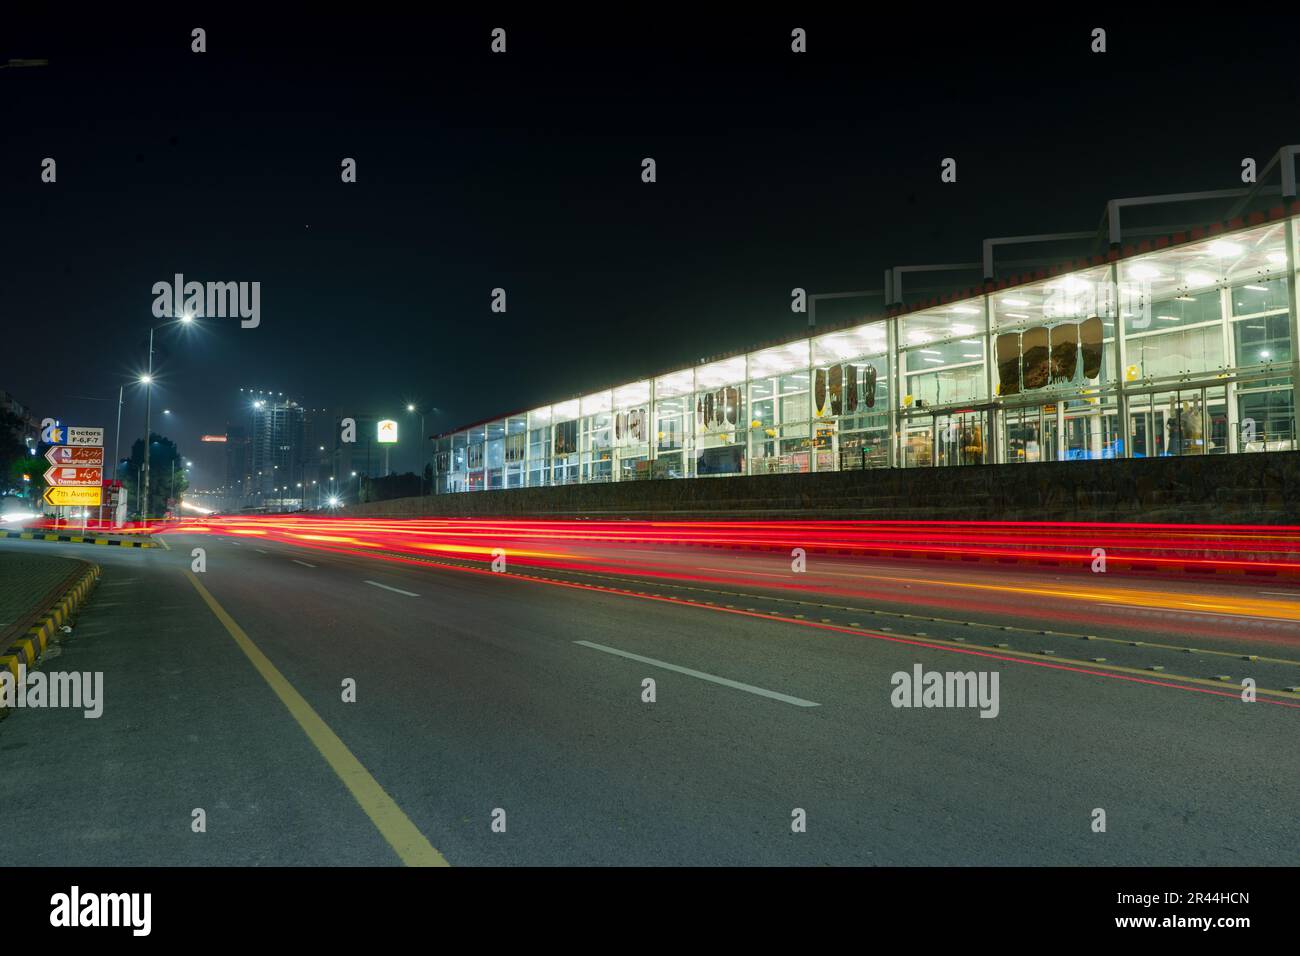 belle vue de nuit des stations de bus de métro islamabad longue exposition des lumières de sentier. Banque D'Images